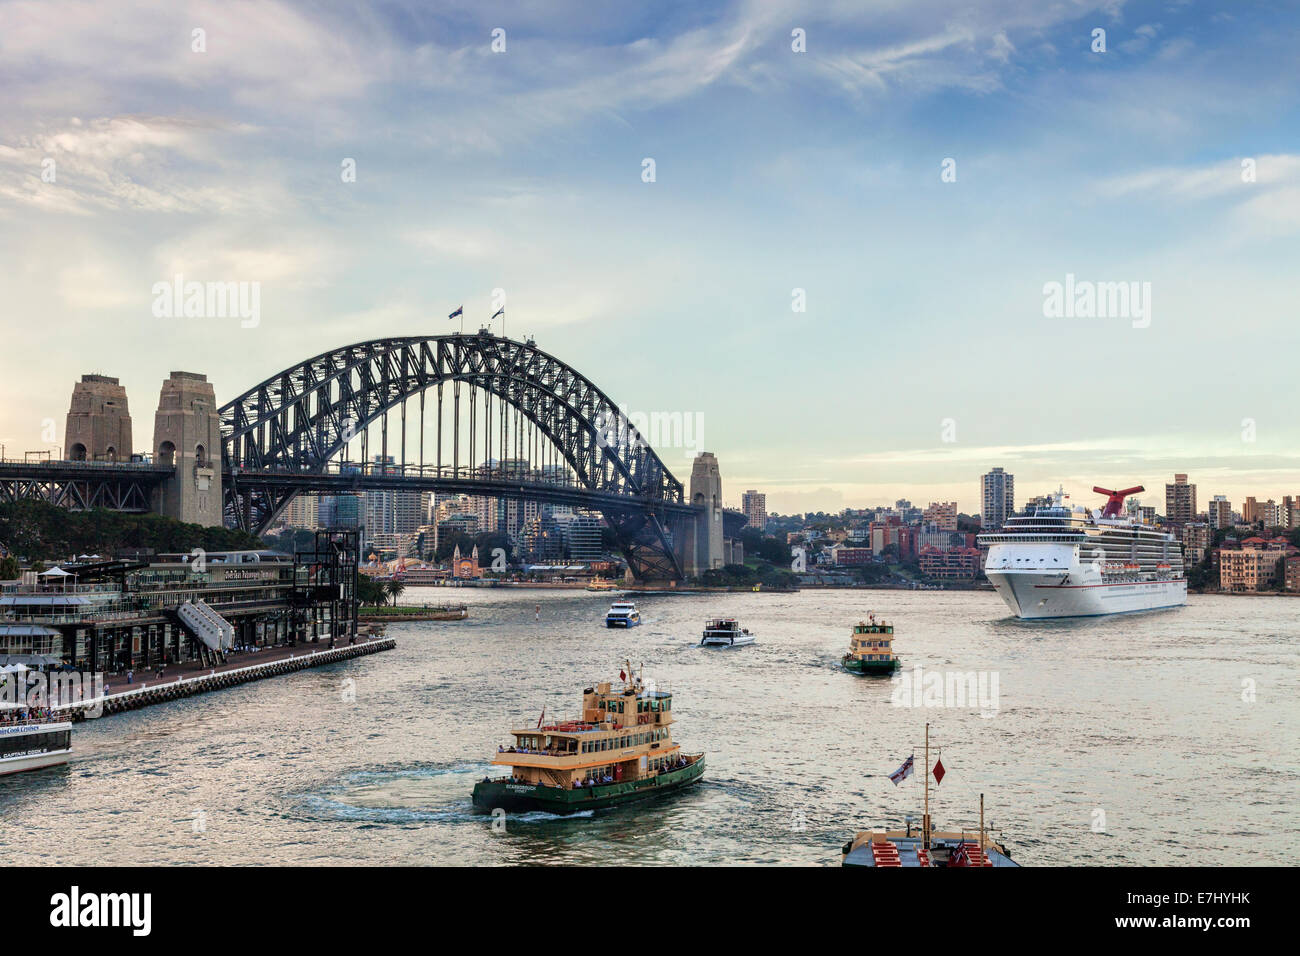 Crépuscule à occupé le port de Sydney, comme le recouvrement de croisière Carnival Spirit quitte son poste à quai à Circular Quay. Banque D'Images